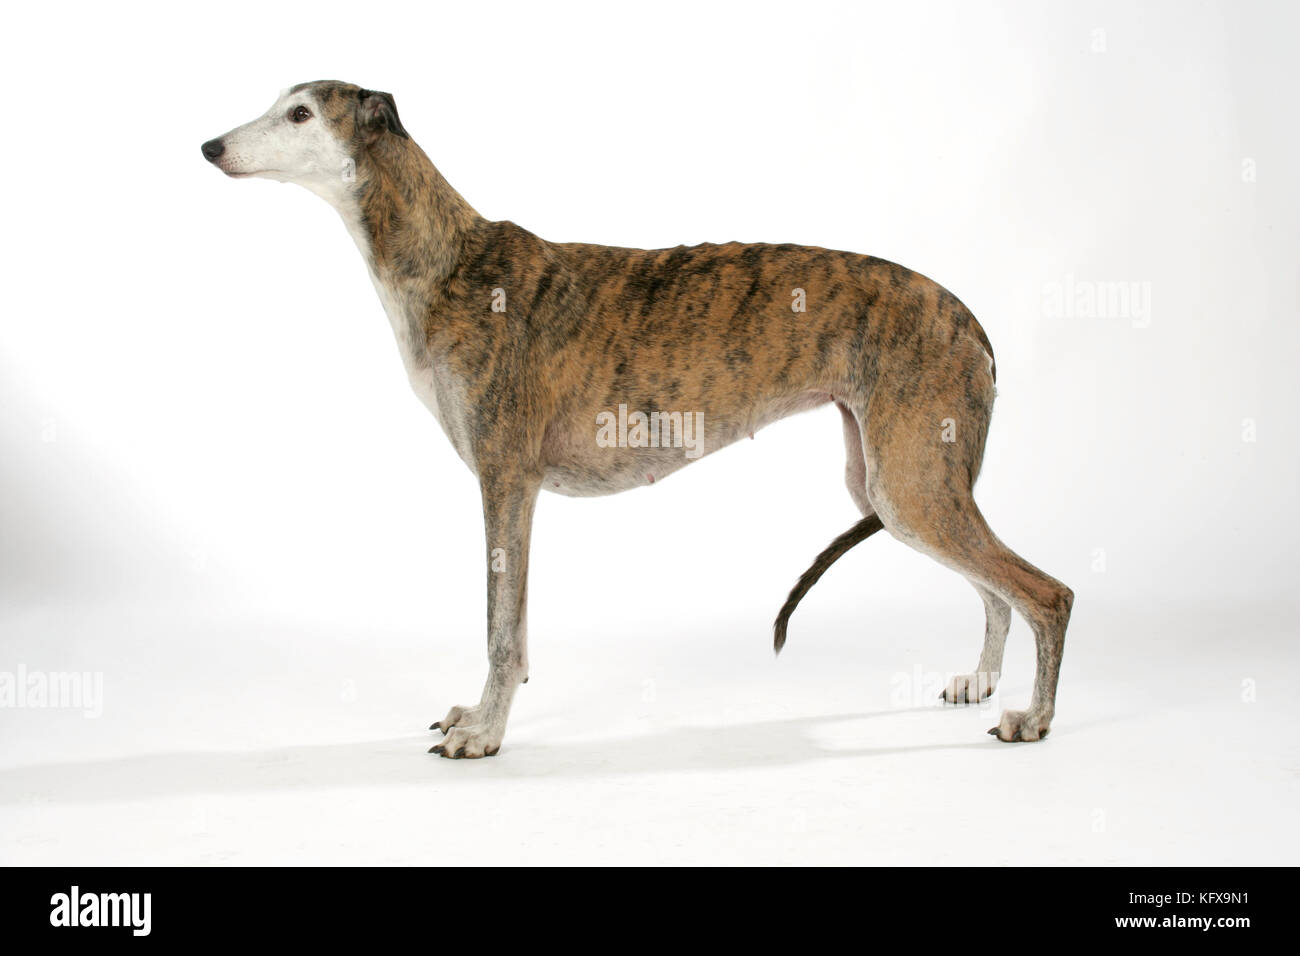 Dog - Dark Brindle and white Greyhound Stock Photo